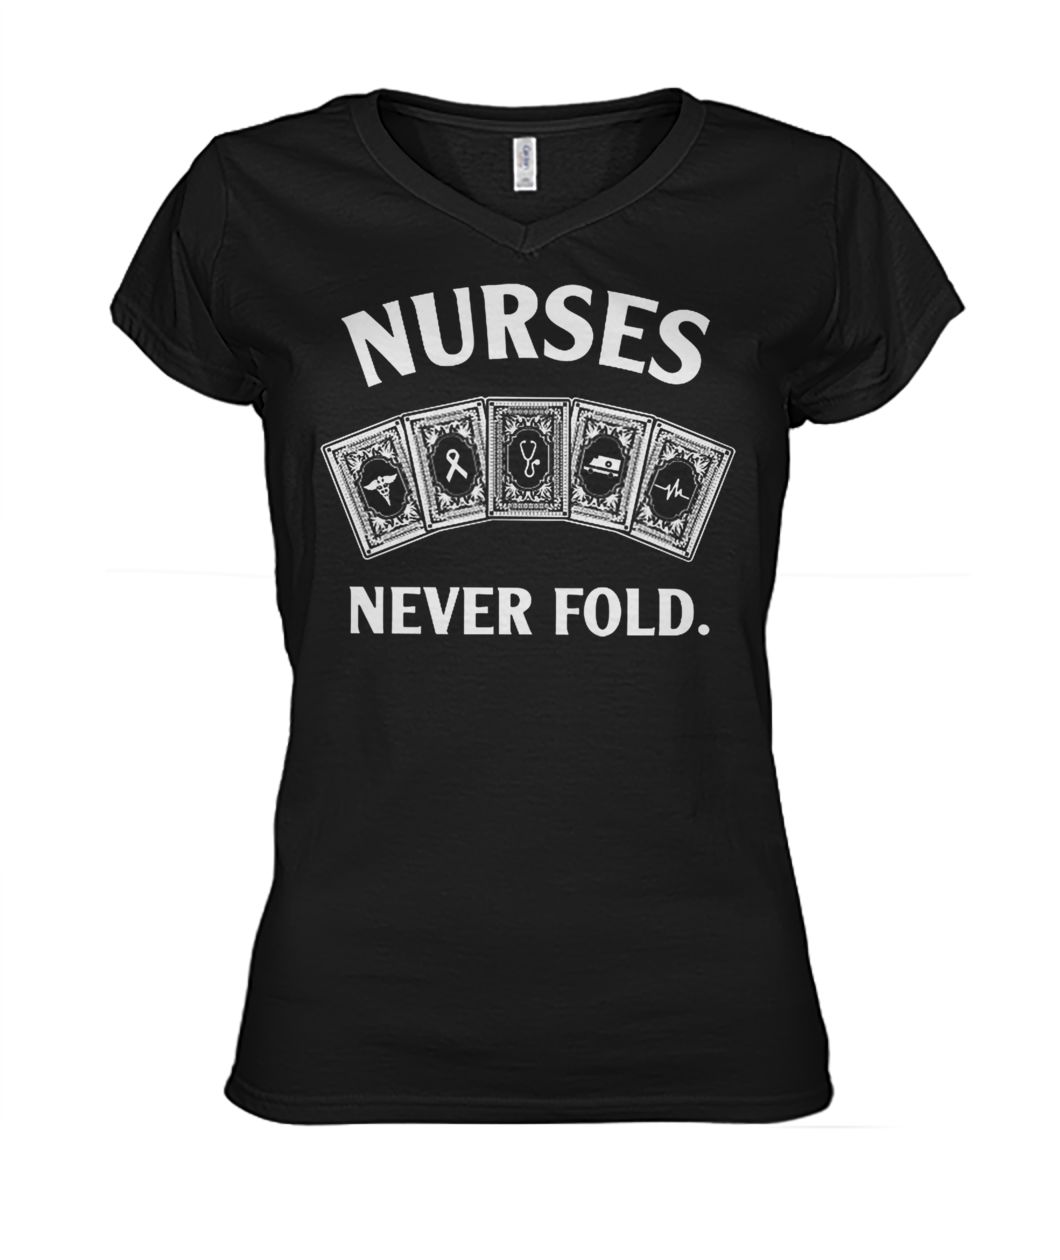 Nurse never fold women's v-neck